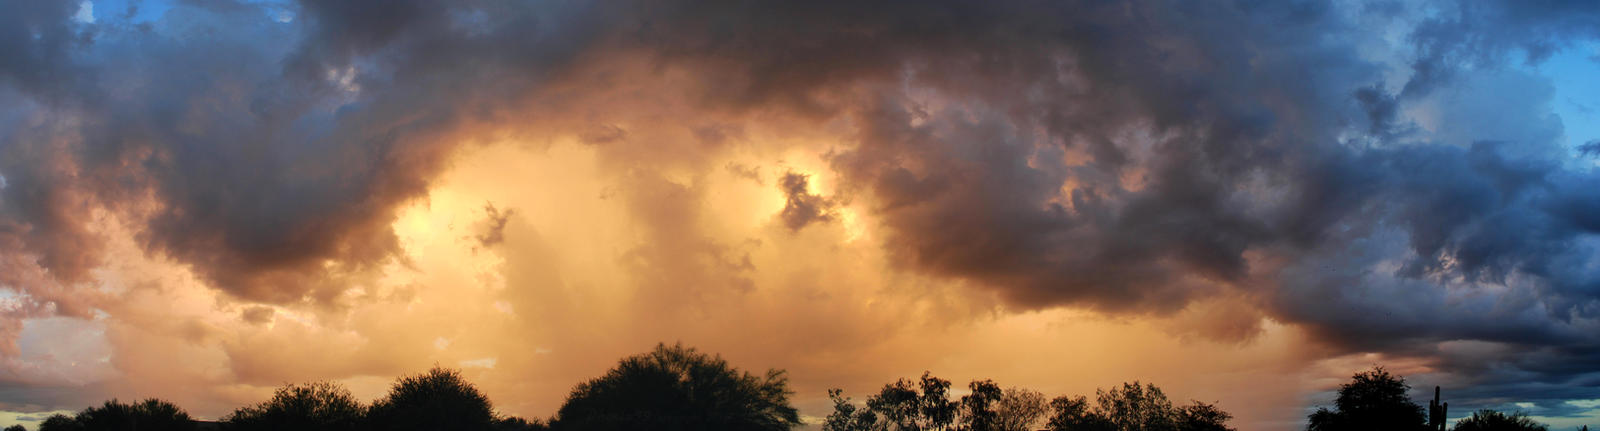 Six AM Weather panorama by Phenix59